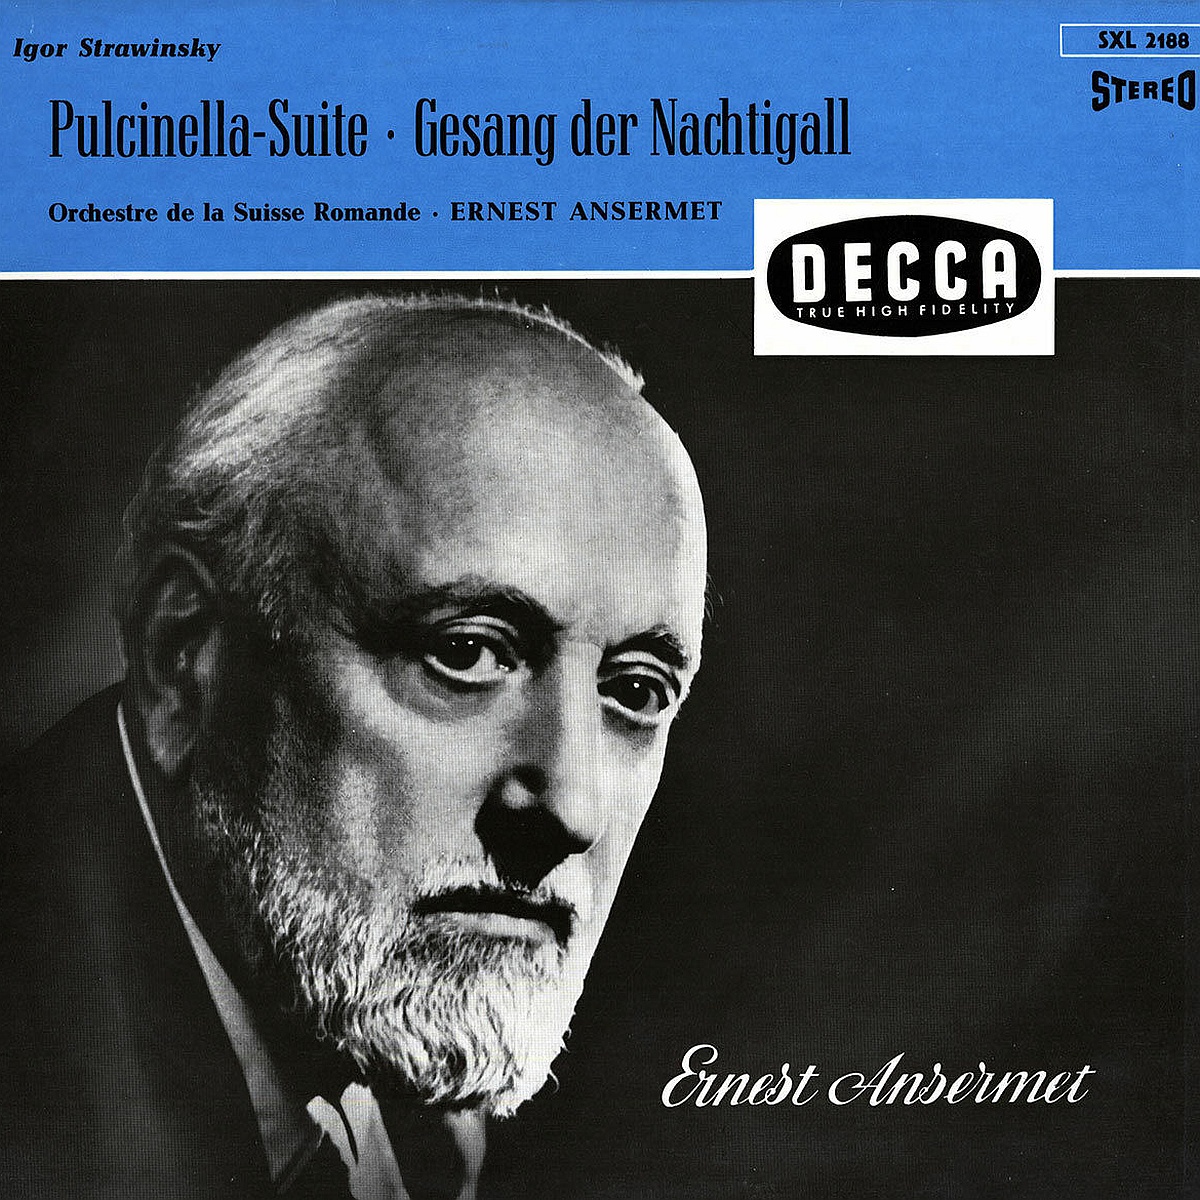 Recto de la pochette du disque Decca SXL 2188, édition allemande